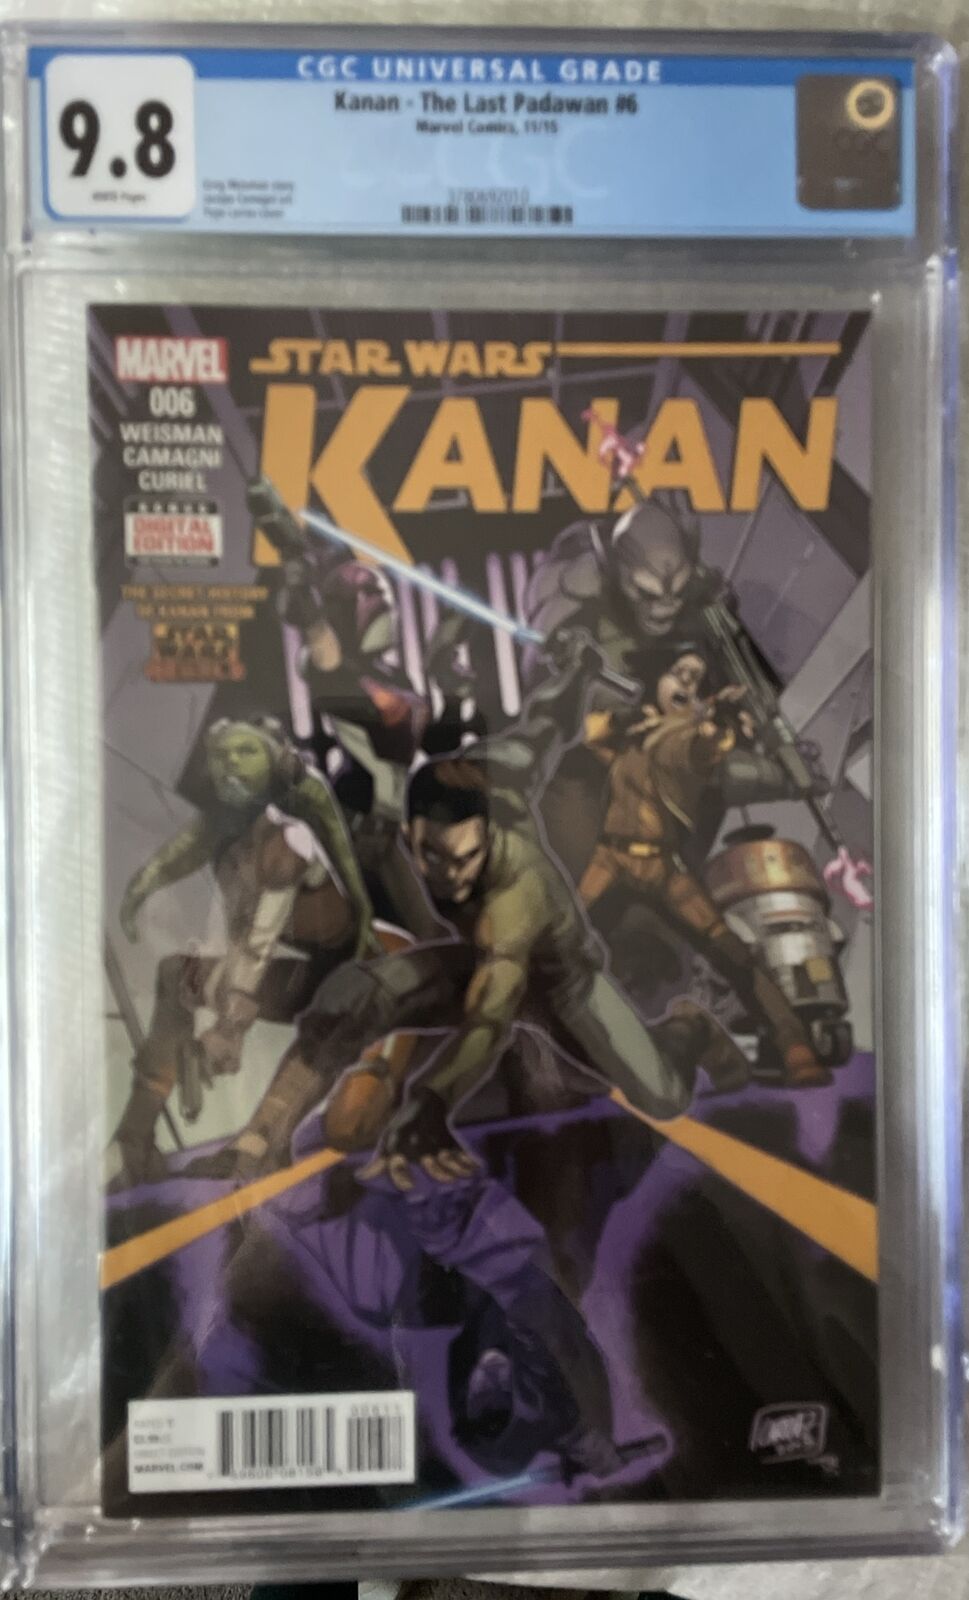 Kanan The Last Padawan #6 CGC 9.8 1st cover Appearance of Rebels crew.